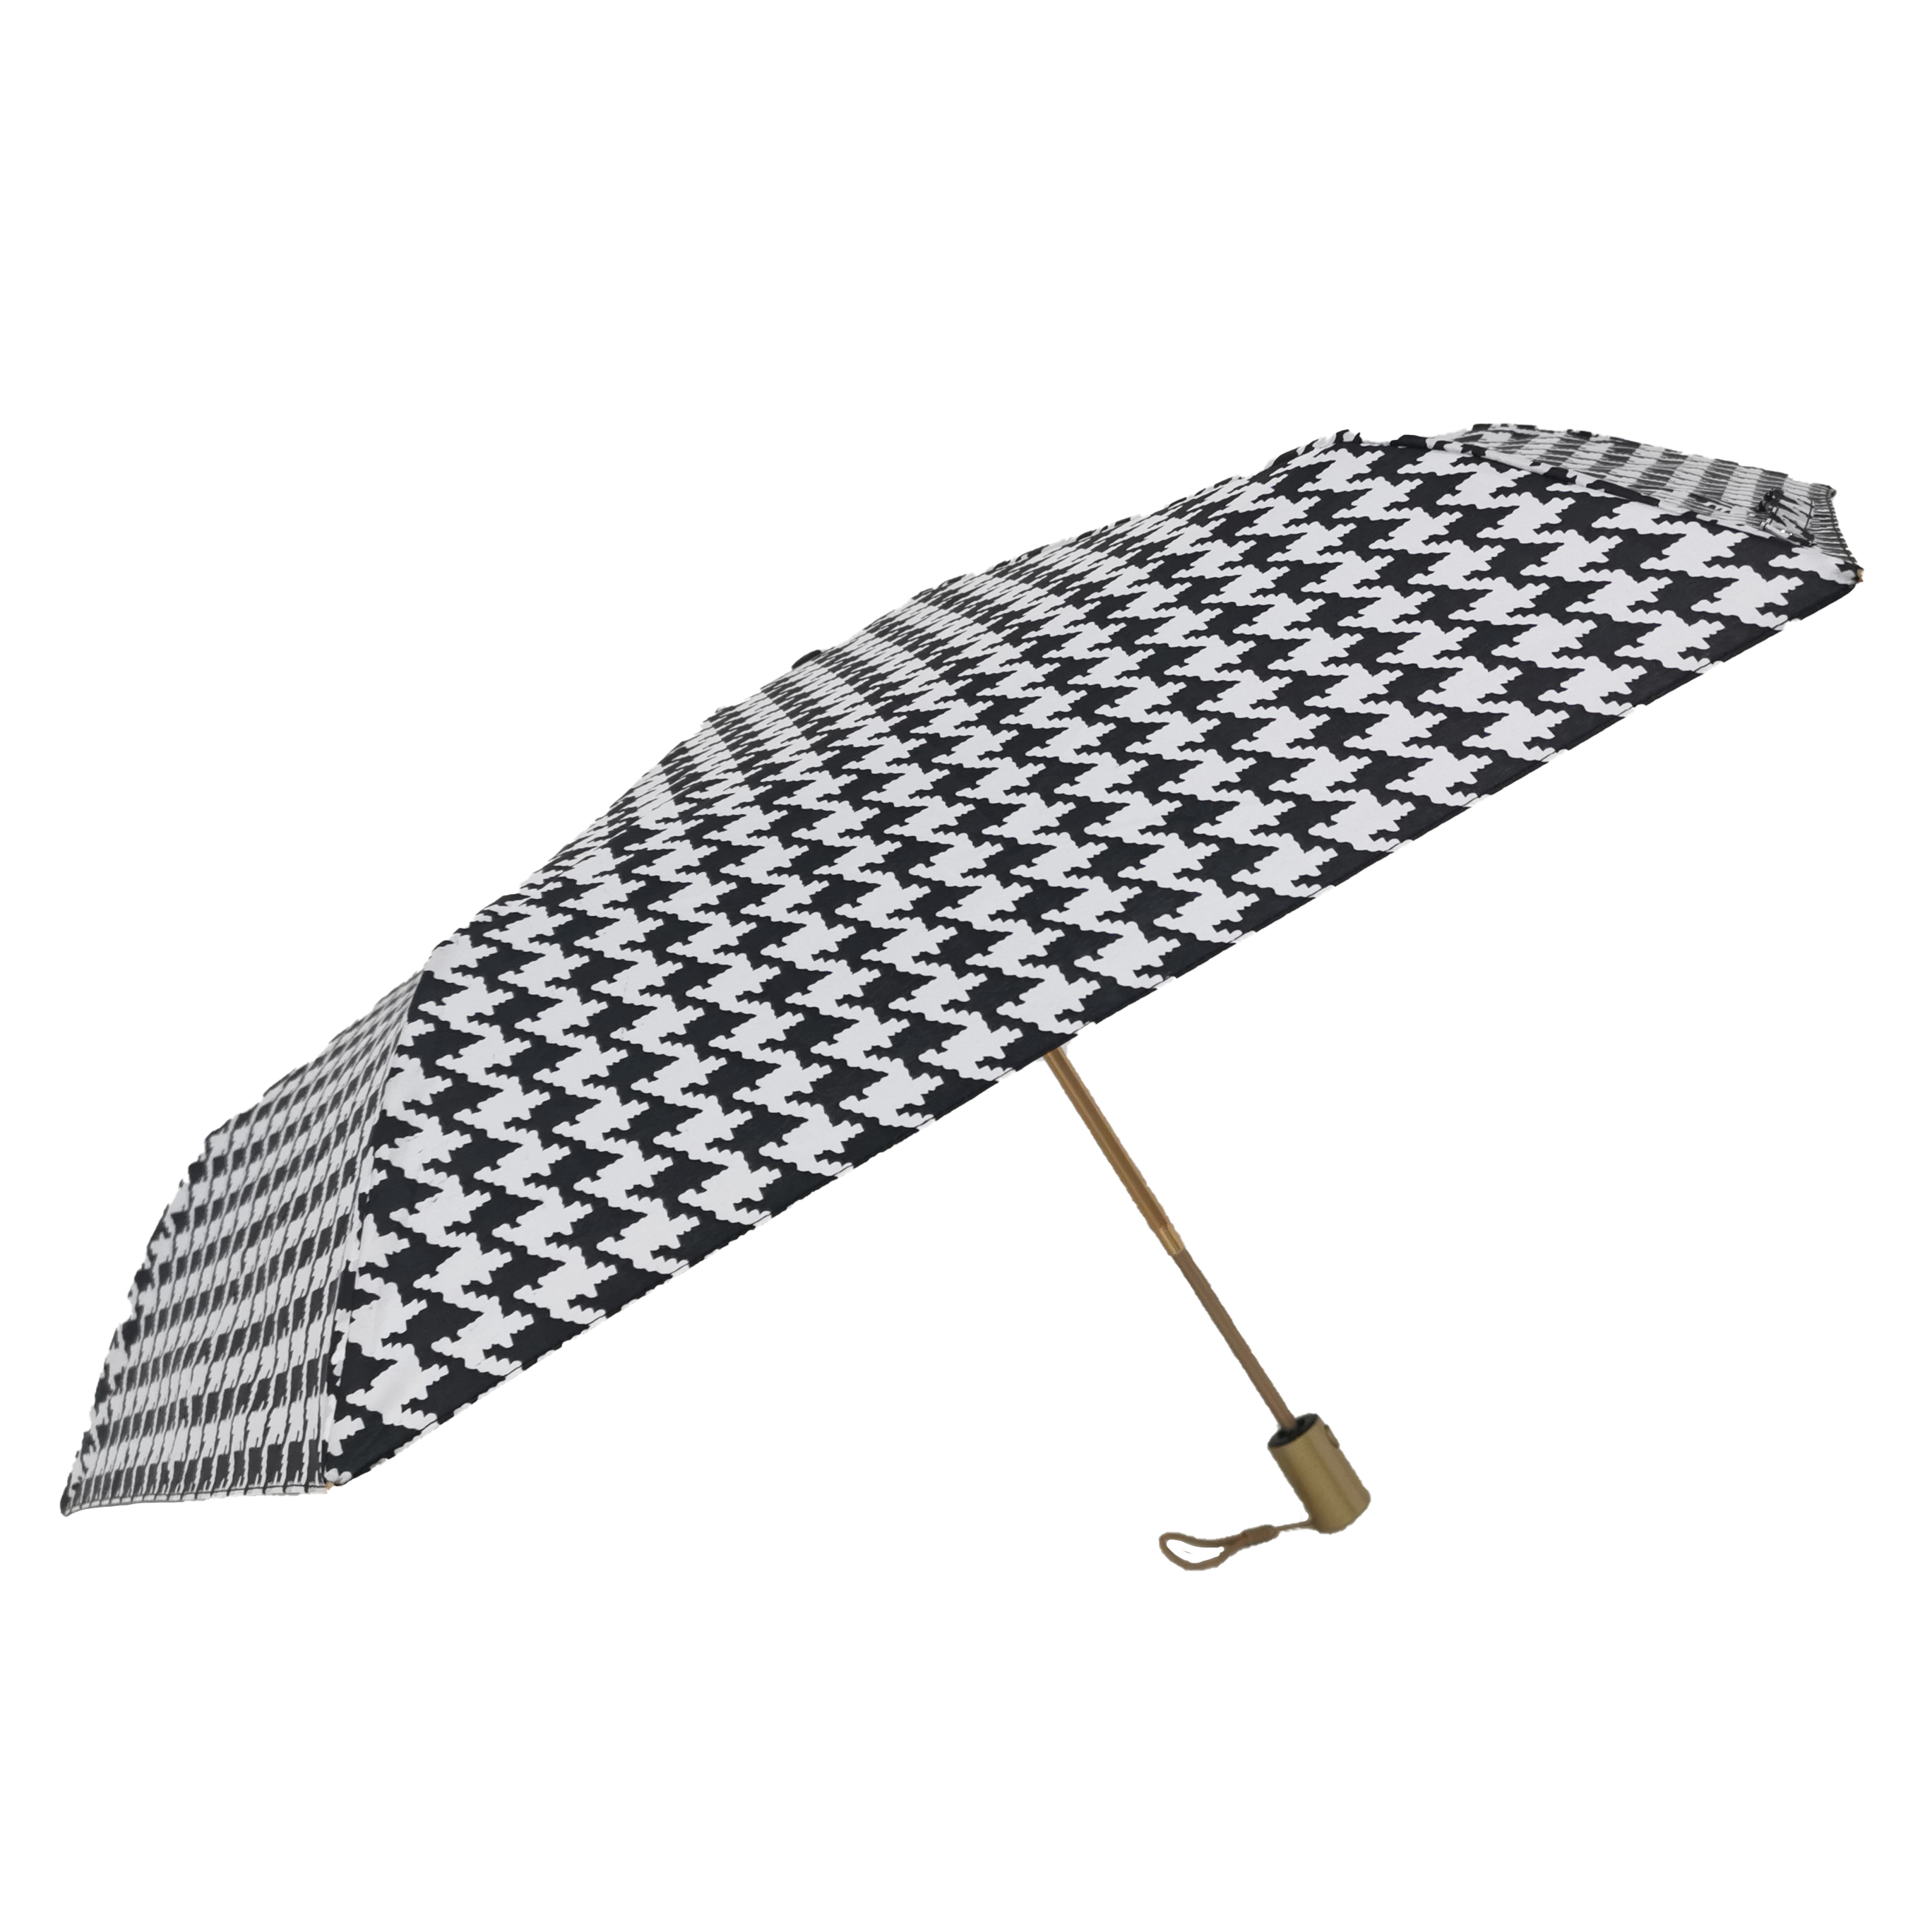 https://www.hodaumbrella.com/3-fold-umbrella-automatic-open-manual- Close-01-product/